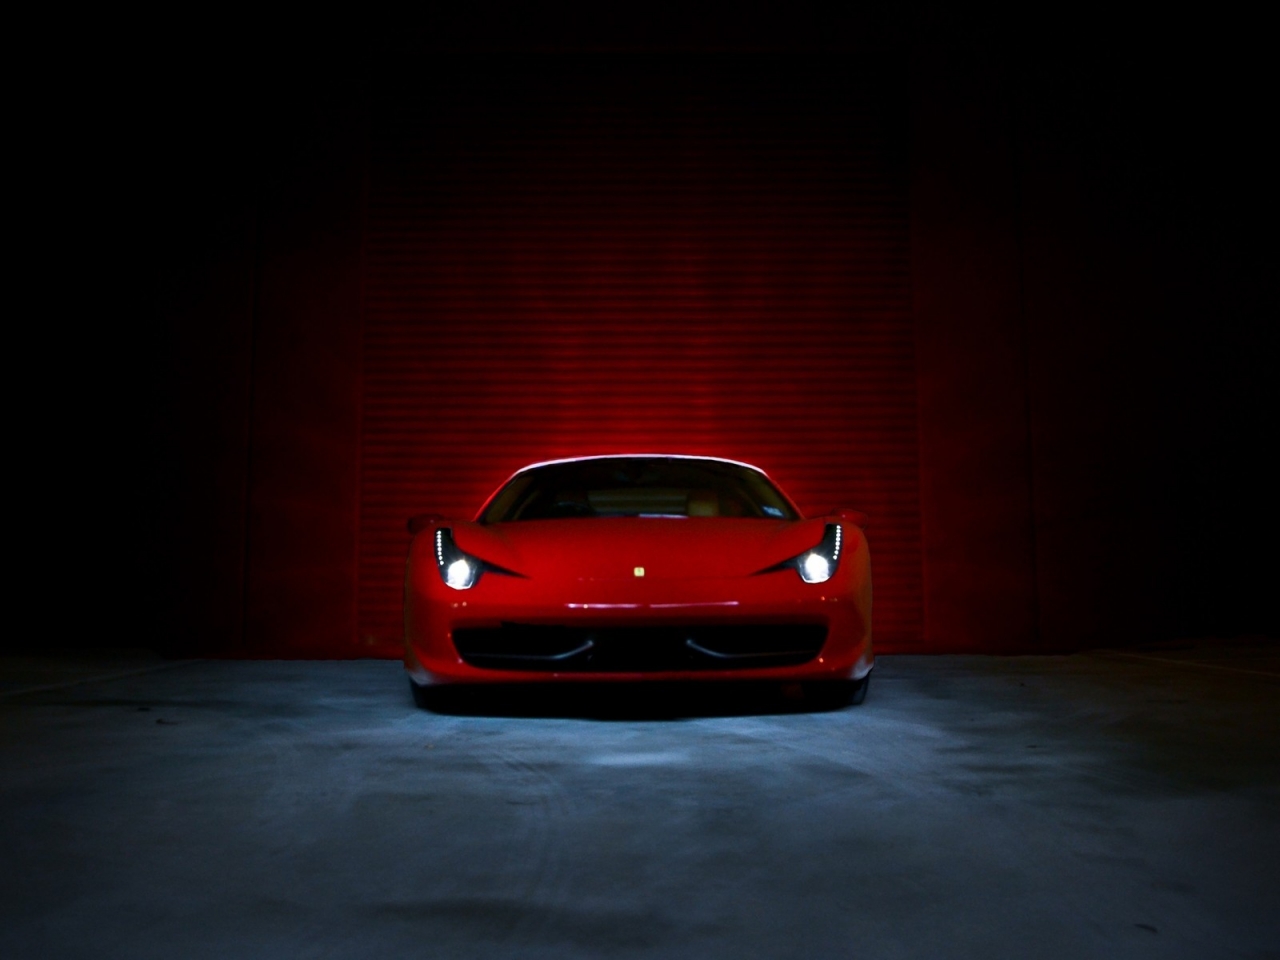 Ferrari 458 Italia Red  for 1280 x 960 resolution